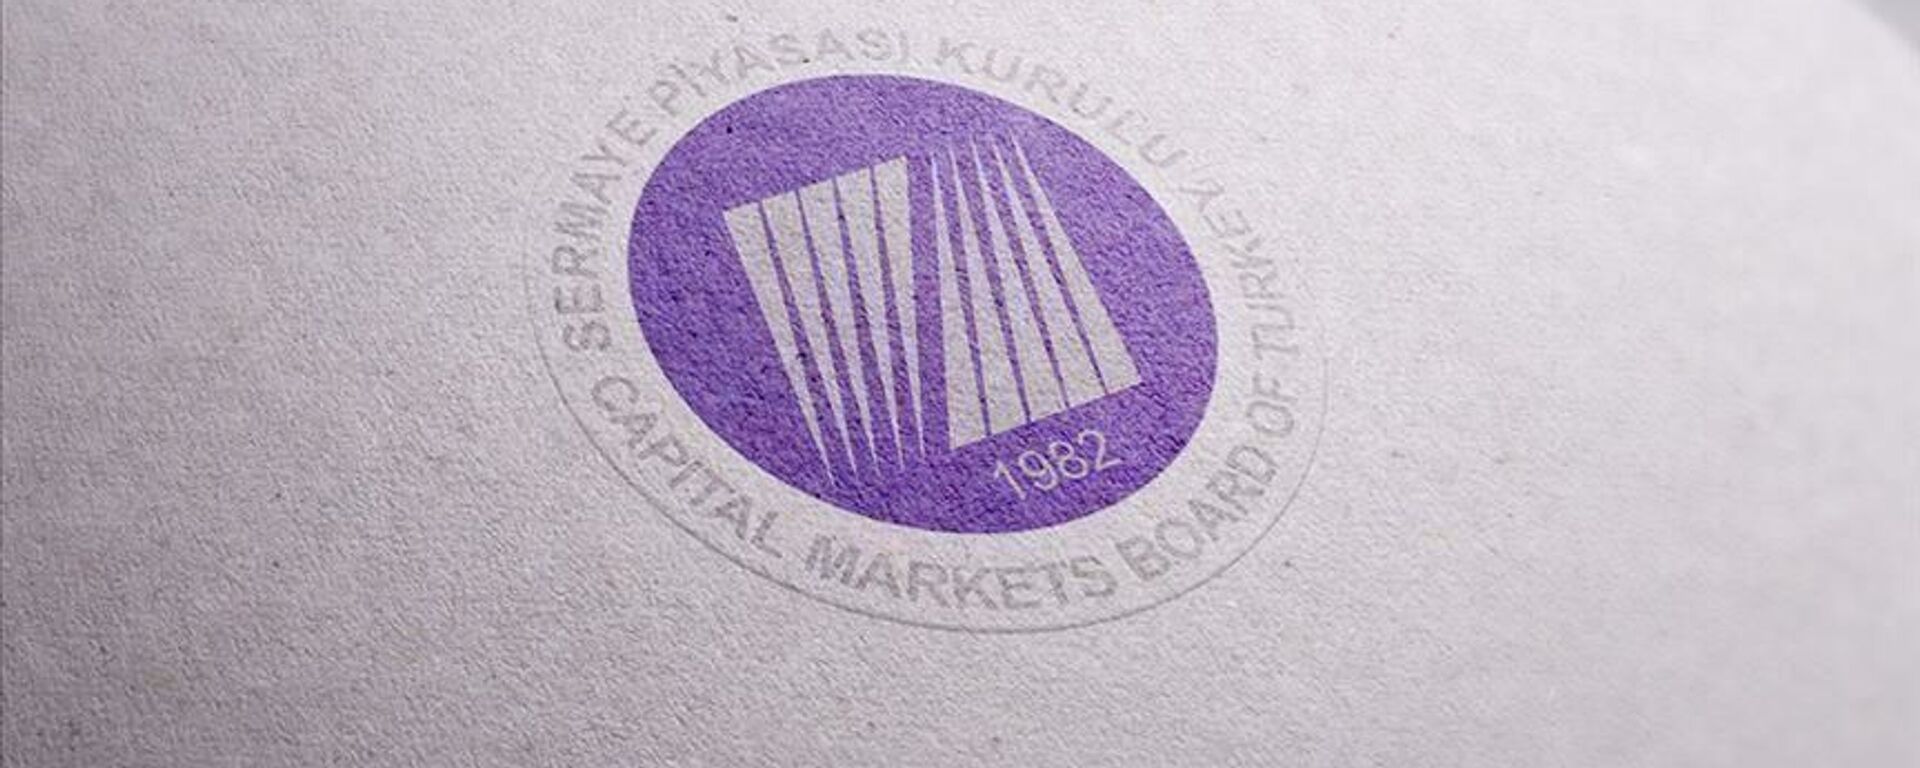 Sermaye Piyasası Kurulu - SPK - Sputnik Türkiye, 1920, 19.02.2022